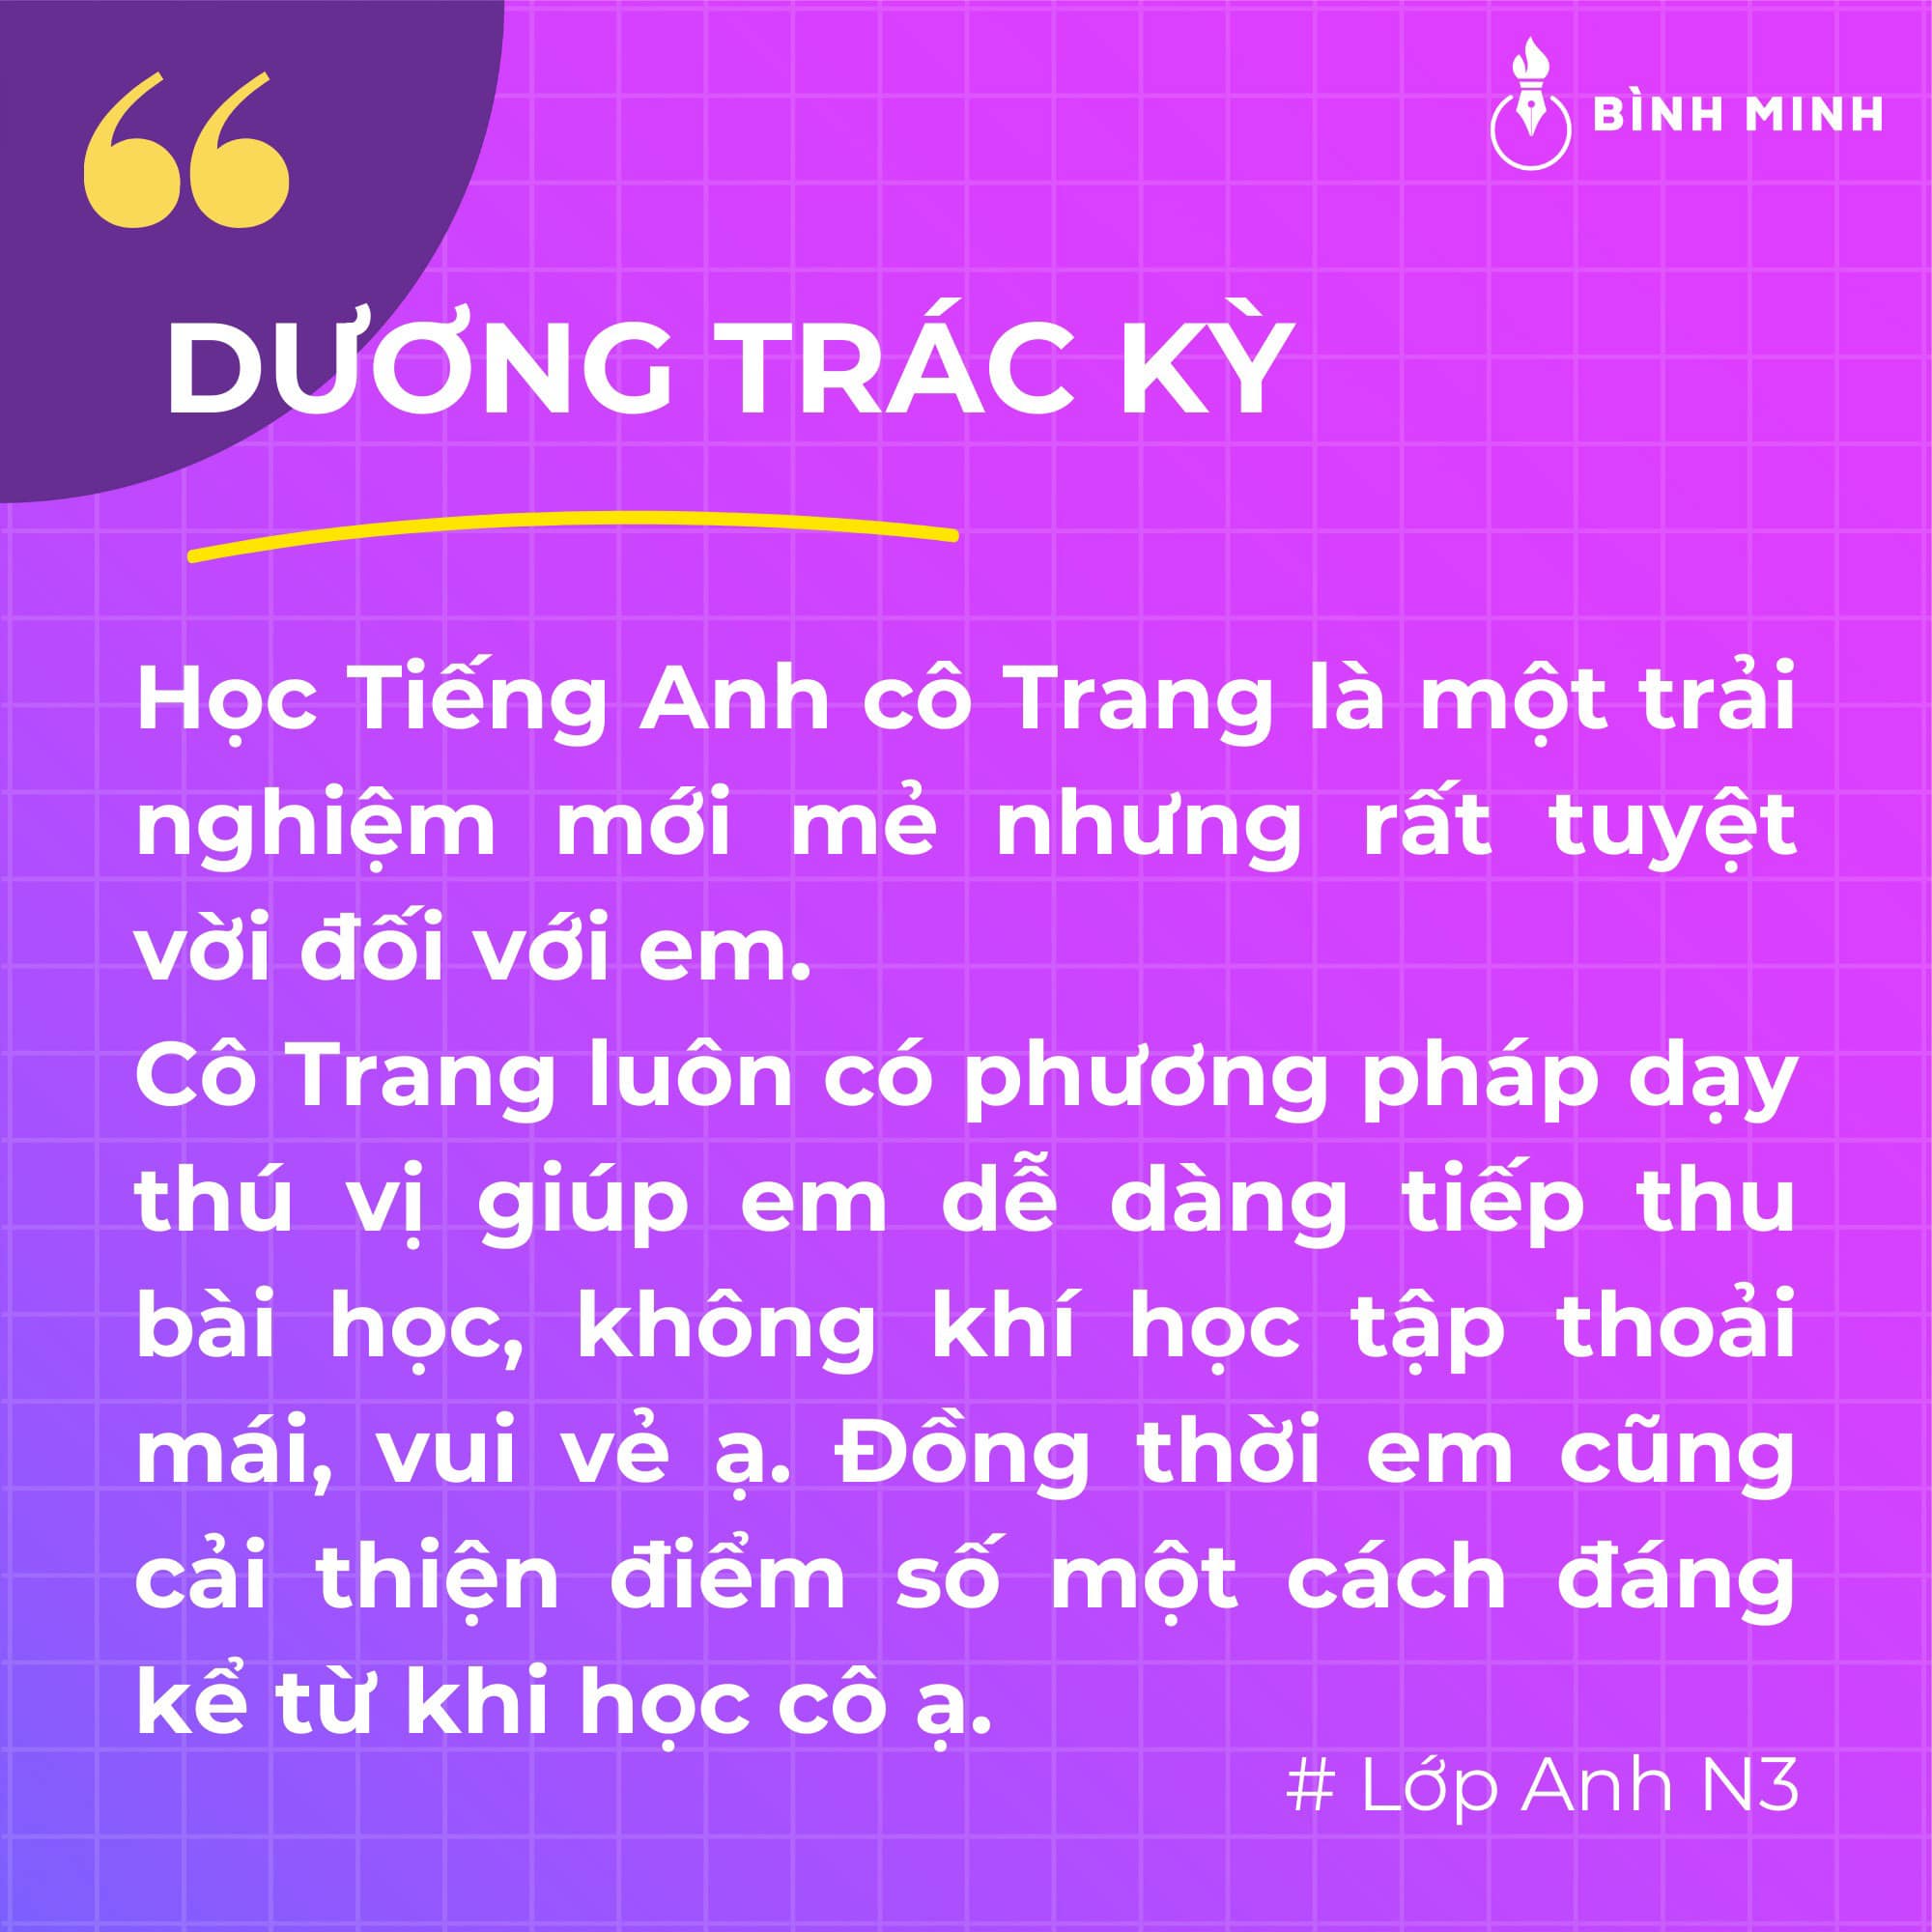 Chia sẻ từ bạn Dương Trác Kỳ, học sinh lớp Tiếng Anh Cô Trang